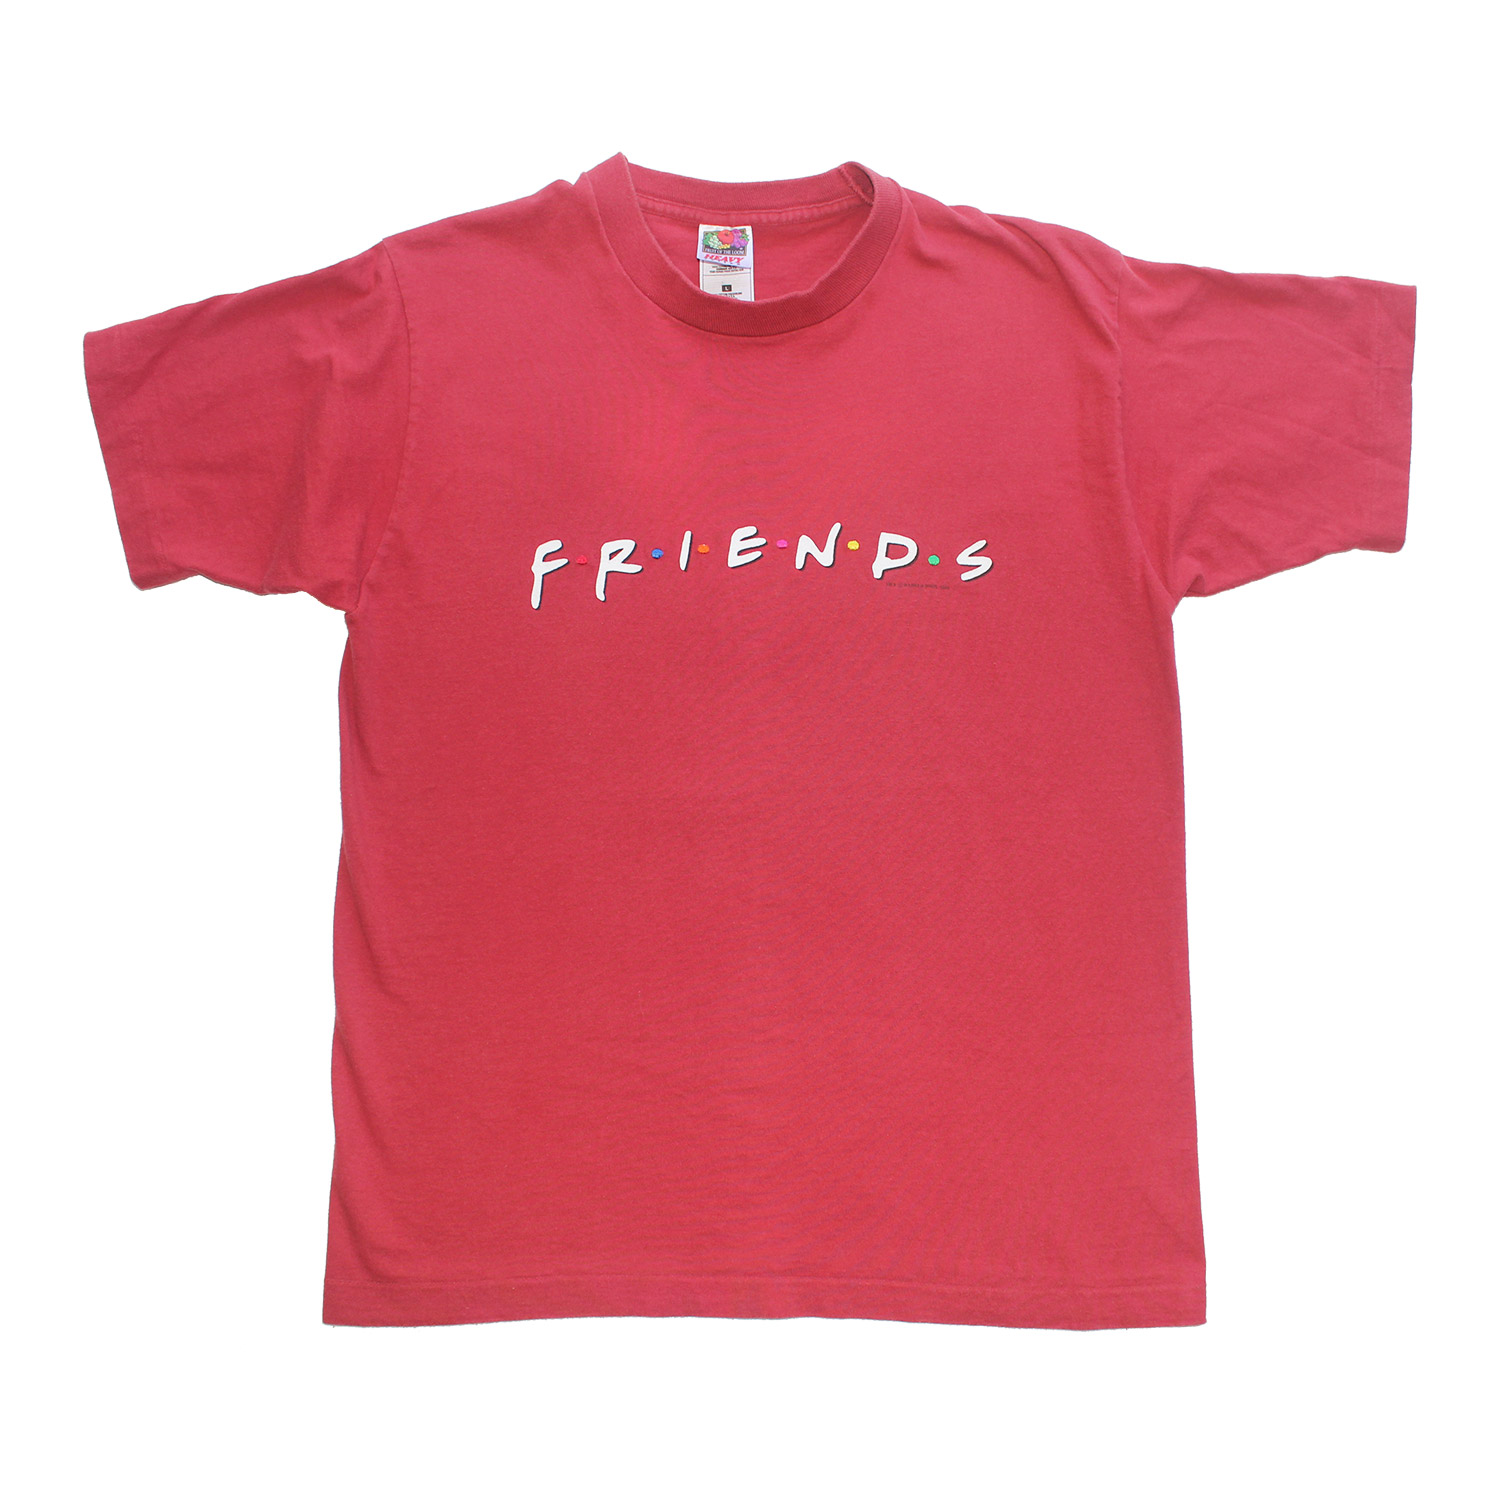 Vintage Friends TV Show Logo T-shirt, Front